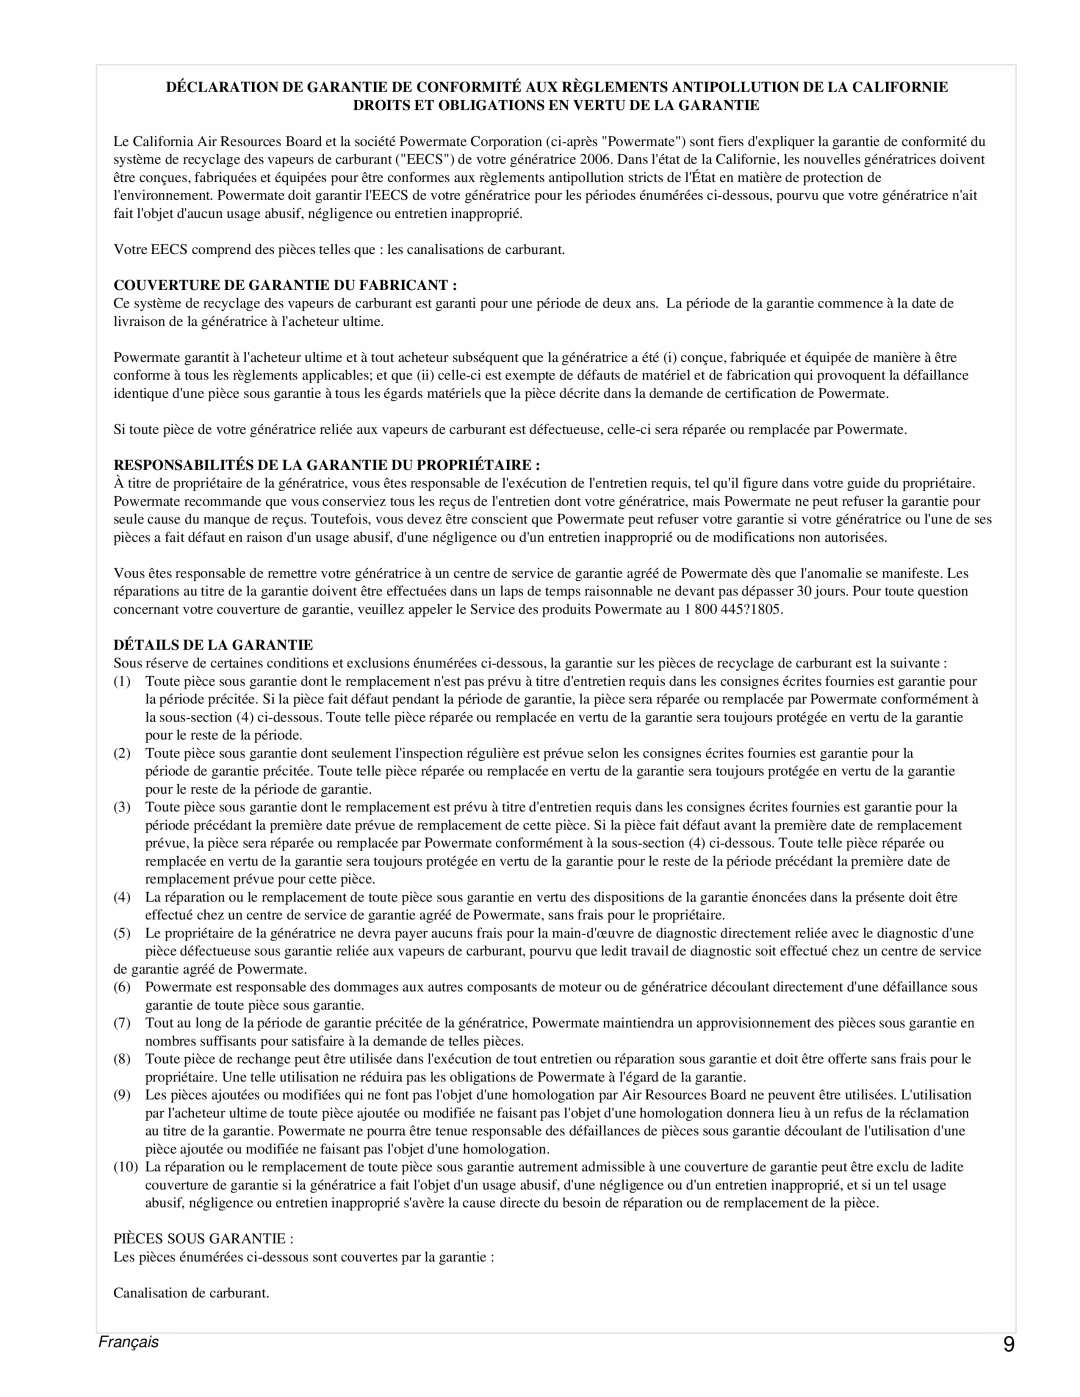 Powermate PMC496751 manual Français, Droits Et Obligations En Vertu De La Garantie, Couverture De Garantie Du Fabricant 